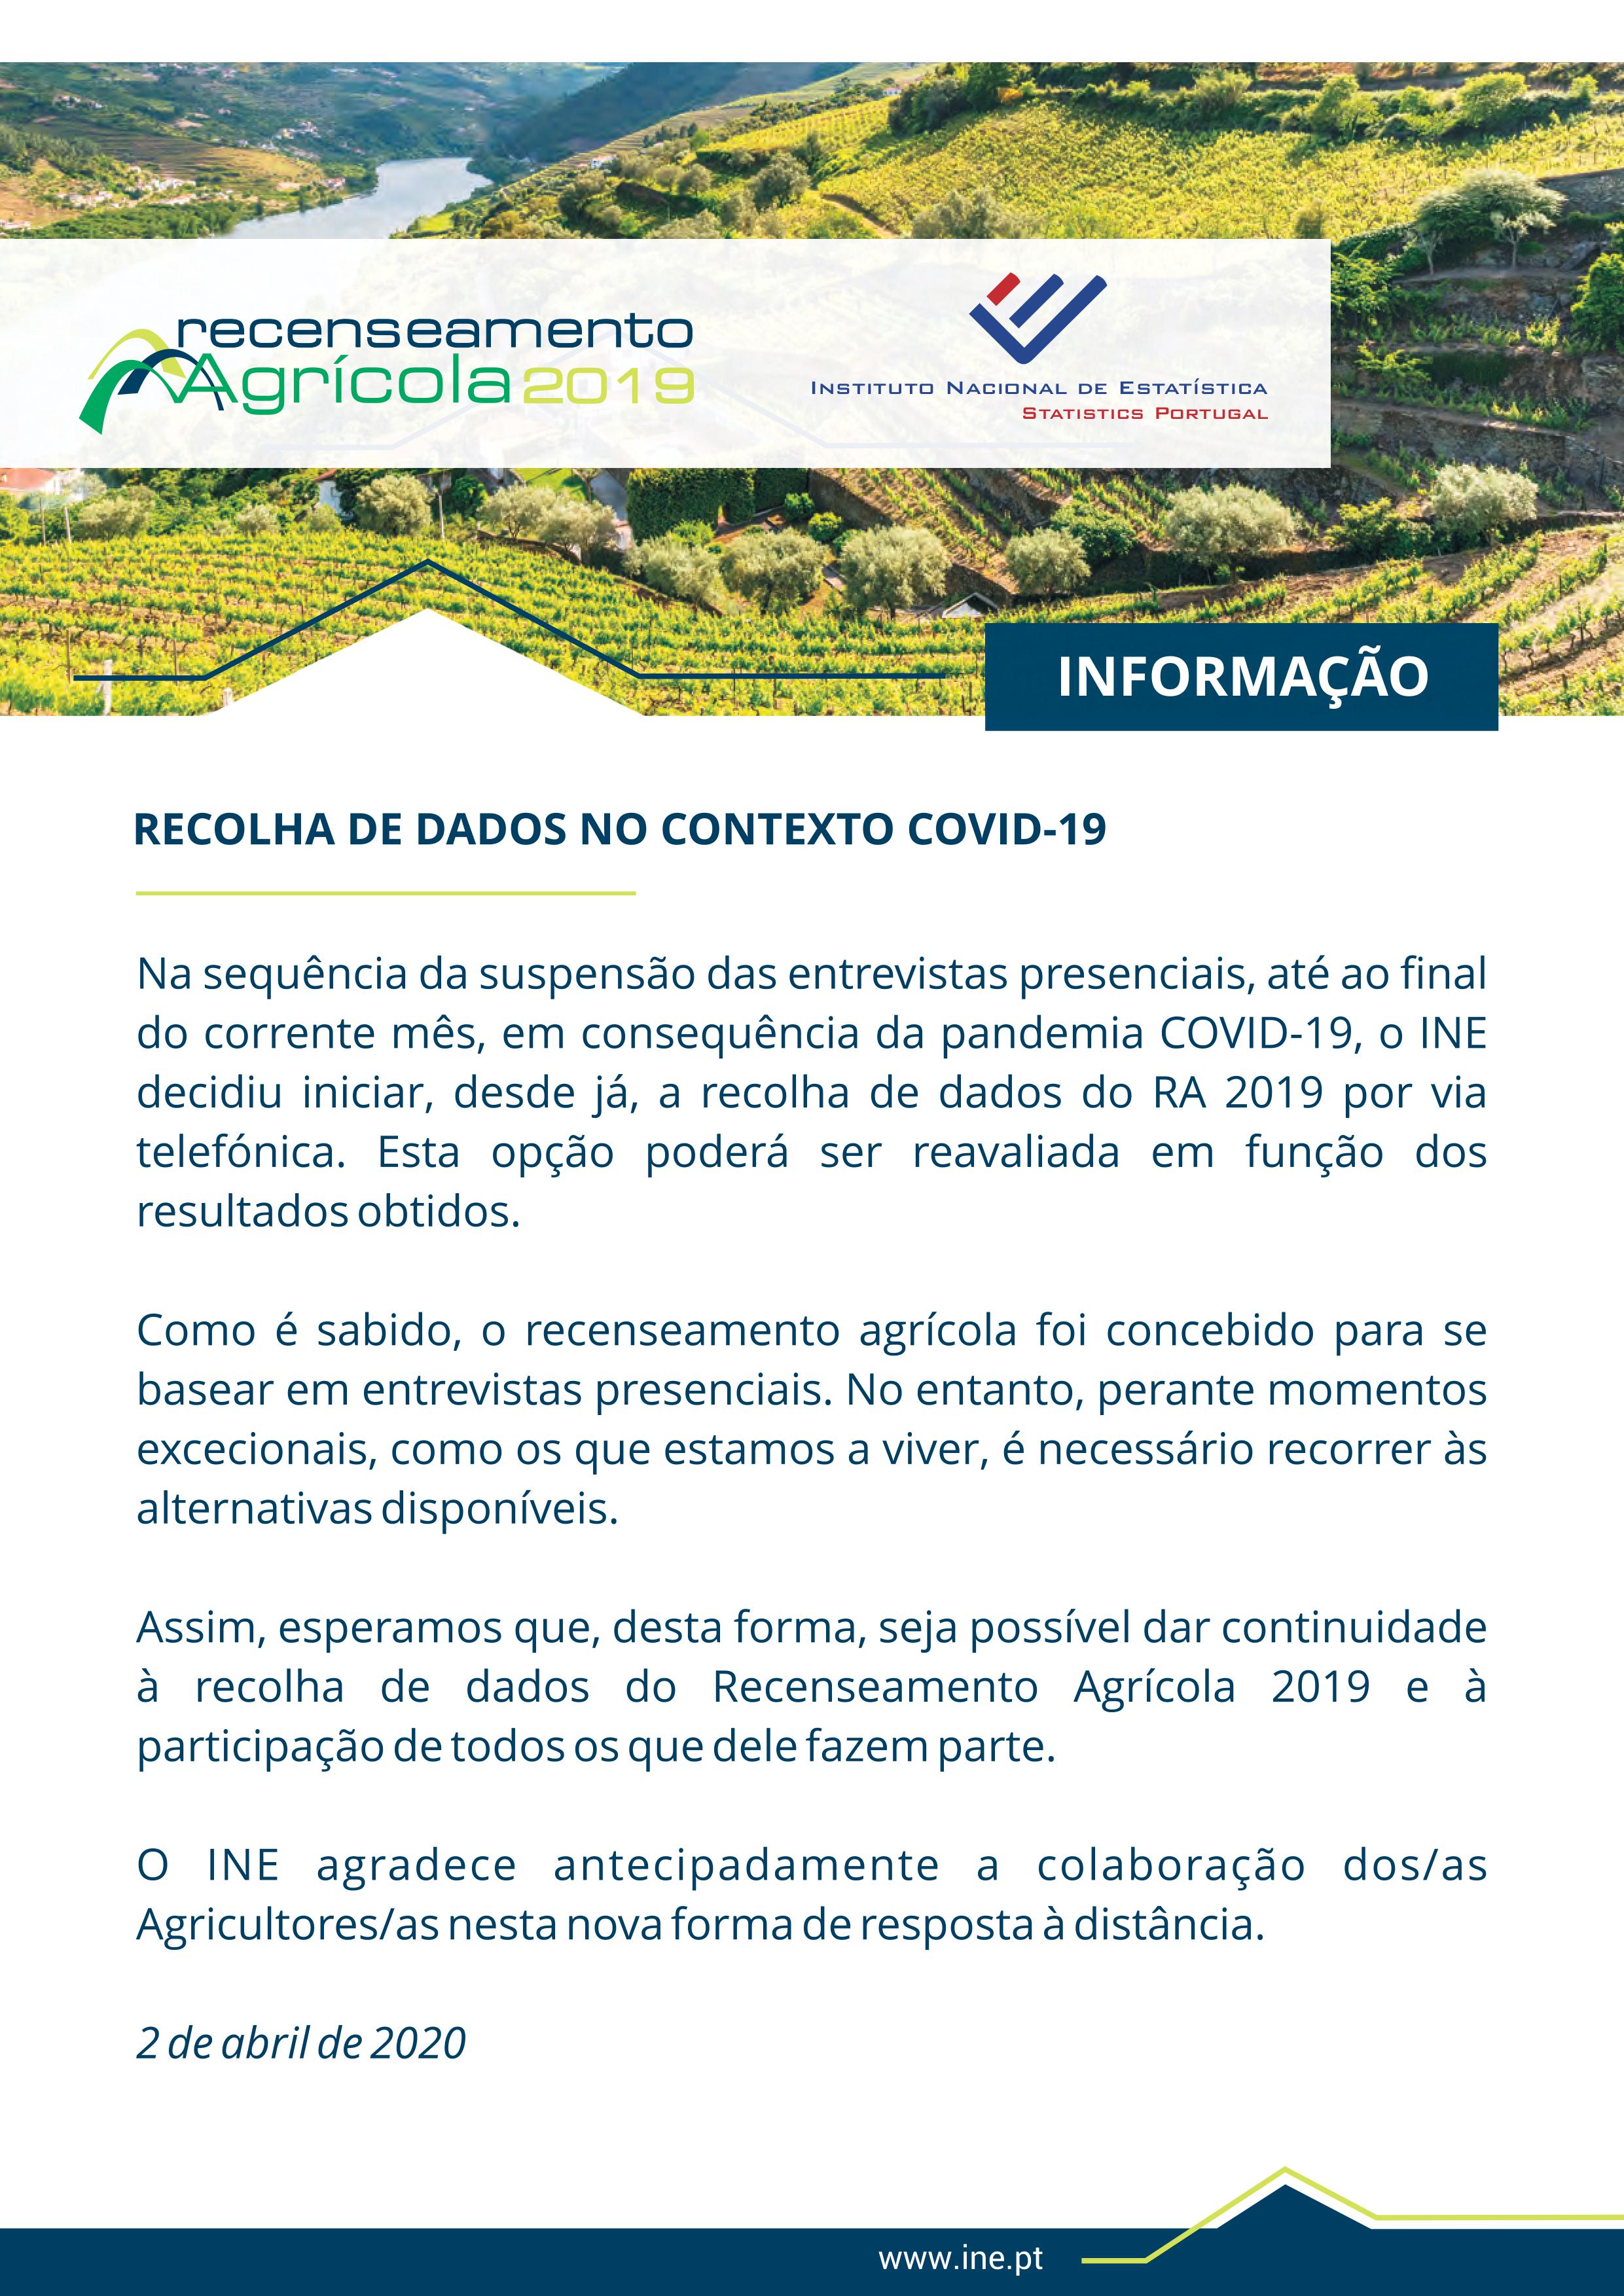 Recenseamento Agrícola 2019 - COVID-19